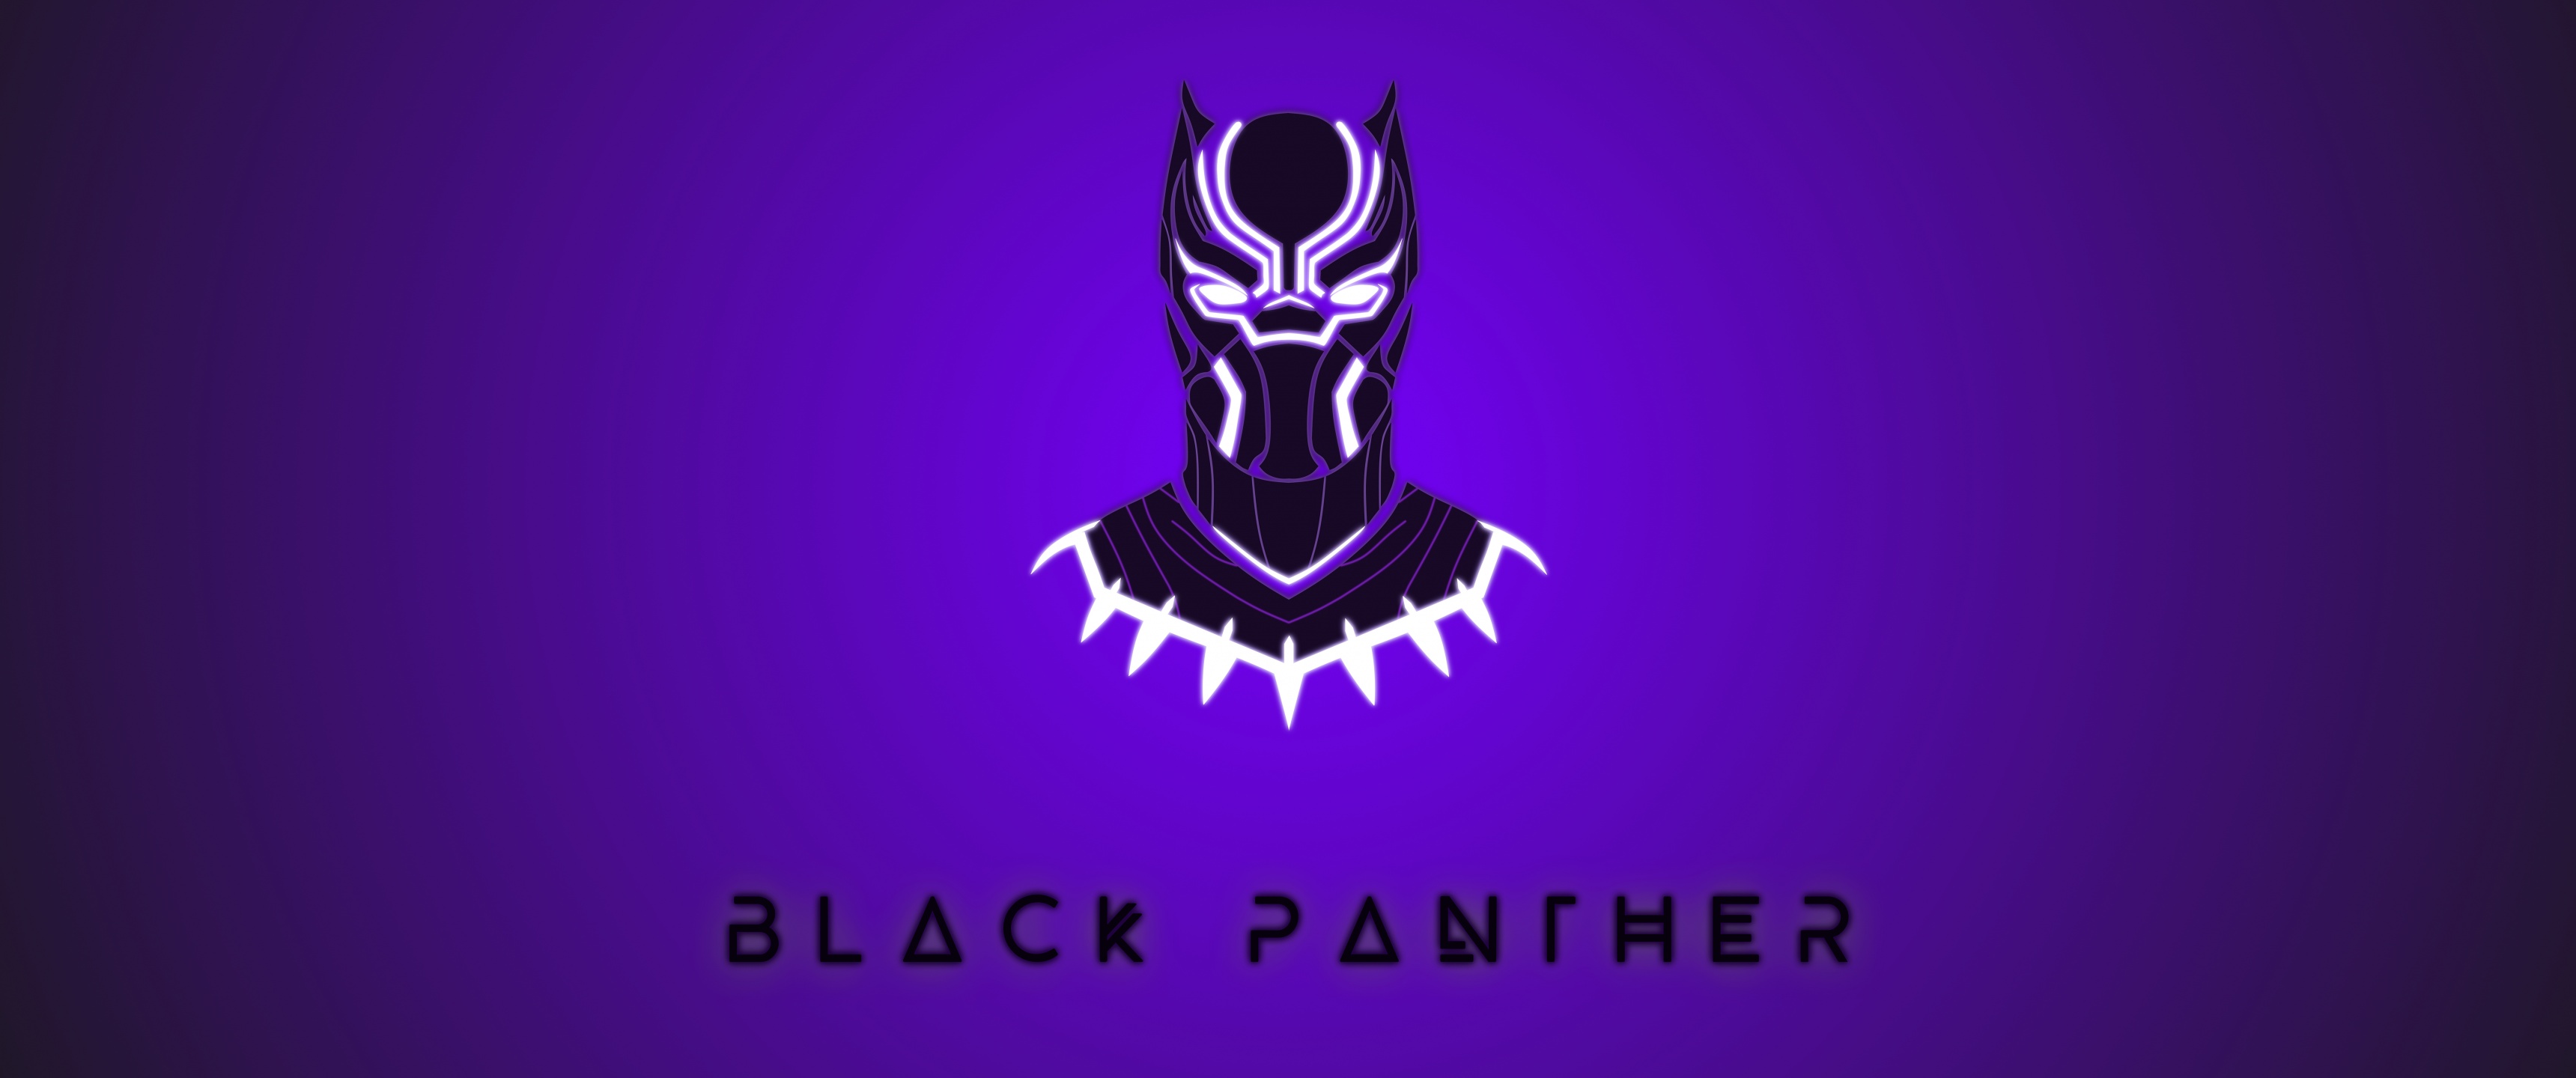 Black Panther Wallpaper 4K Minimal art Graphics CGI 4247